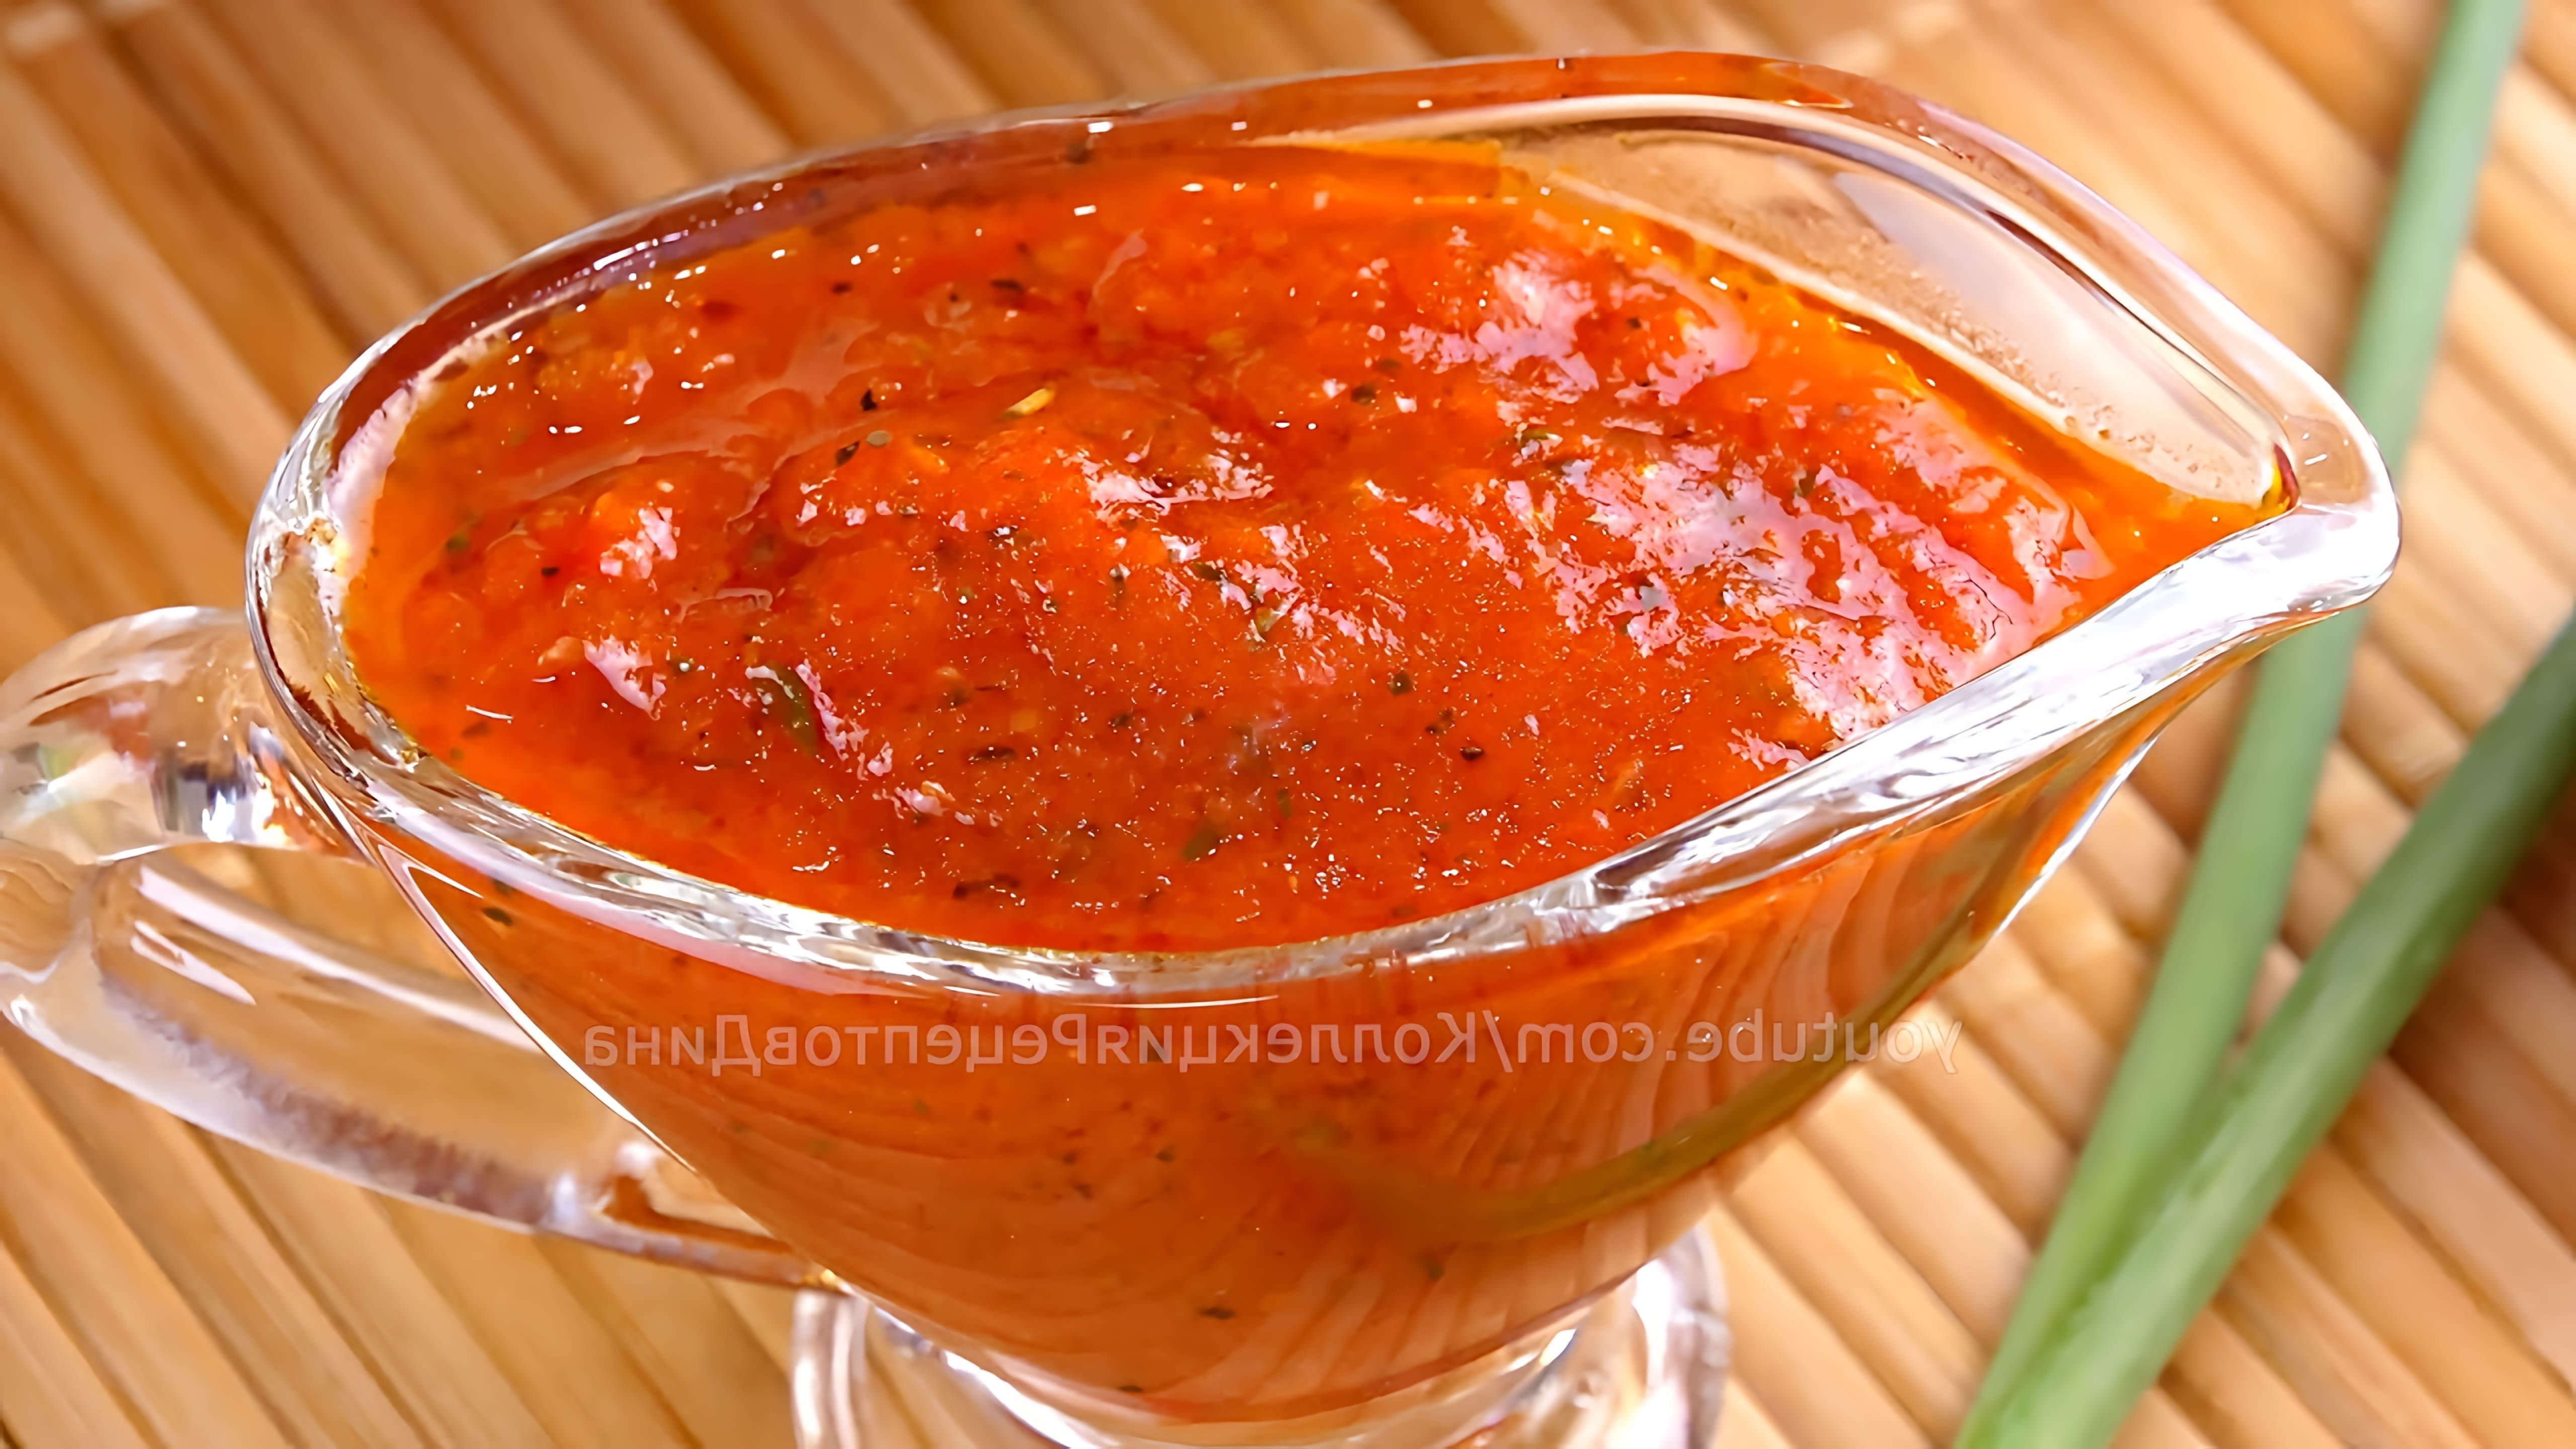 В этом видео демонстрируется процесс приготовления томатного соуса для пиццы